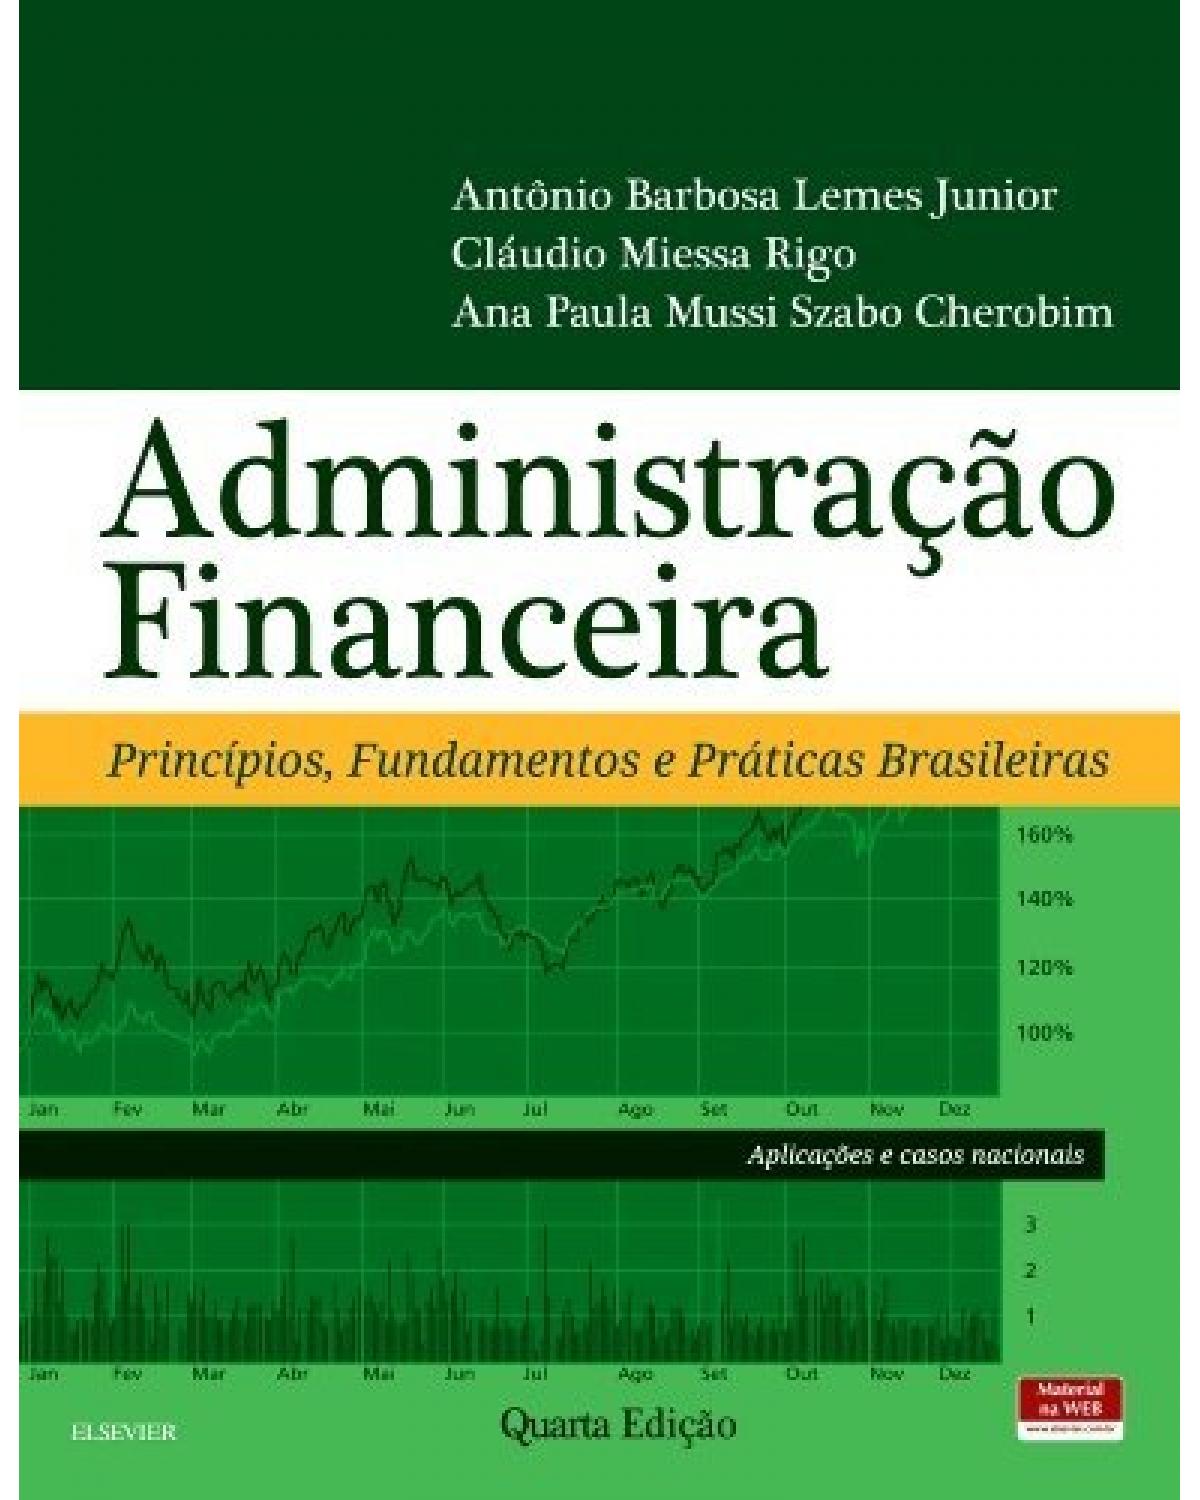 Administração financeira - princípios, fundamentos e práticas brasileiras - 4ª Edição | 2016